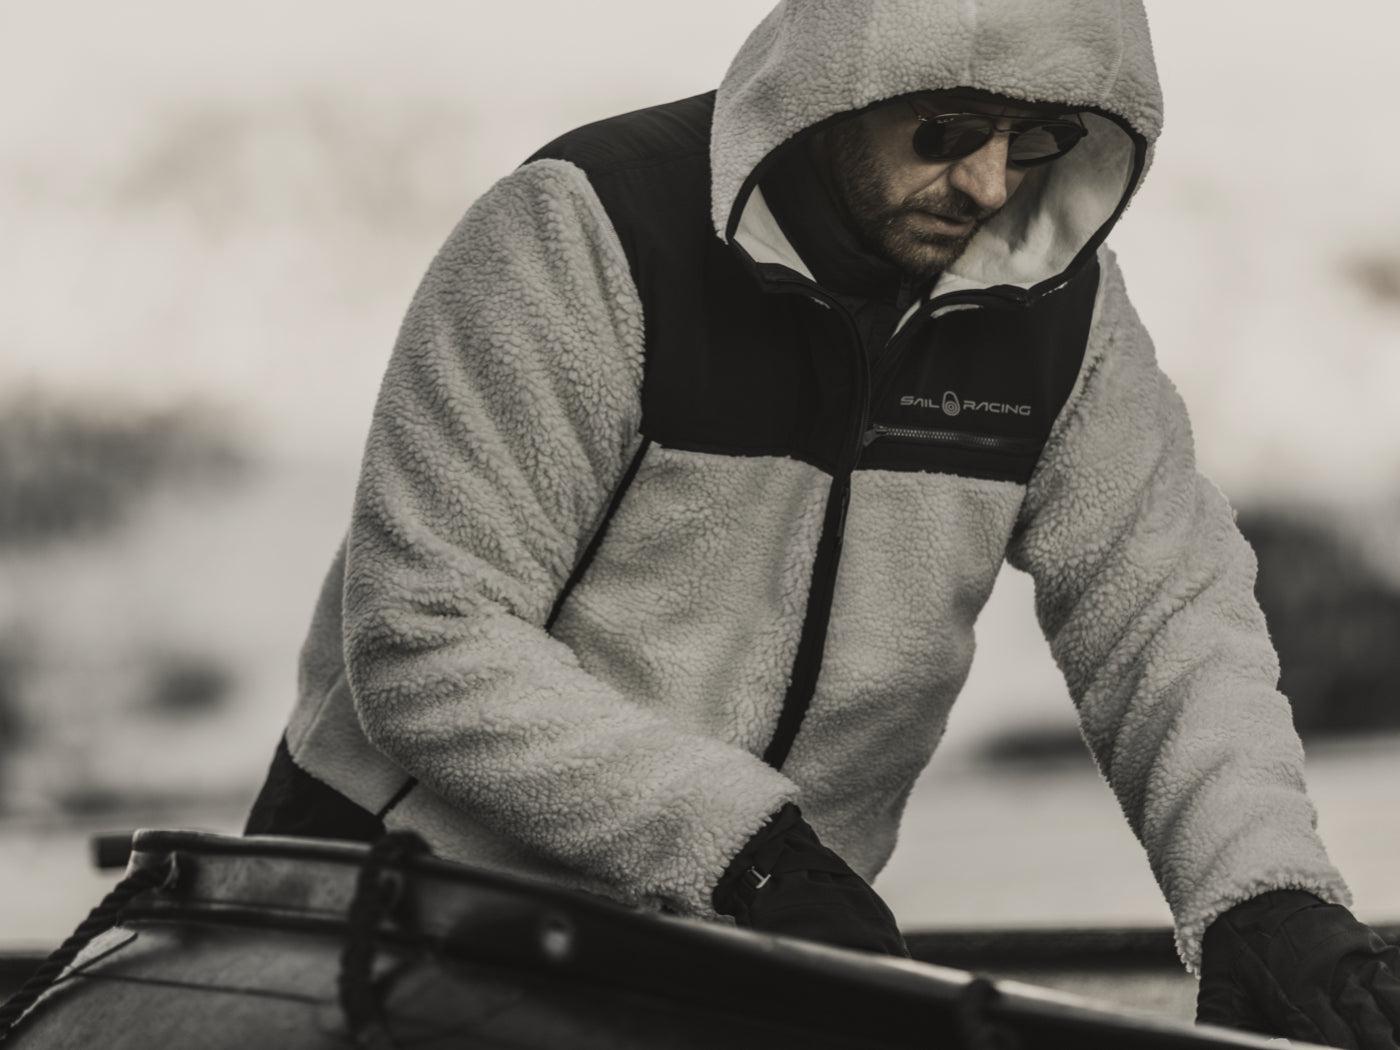 Oppdag den myke følelsen med trendy pile-klær fra Sail Racing